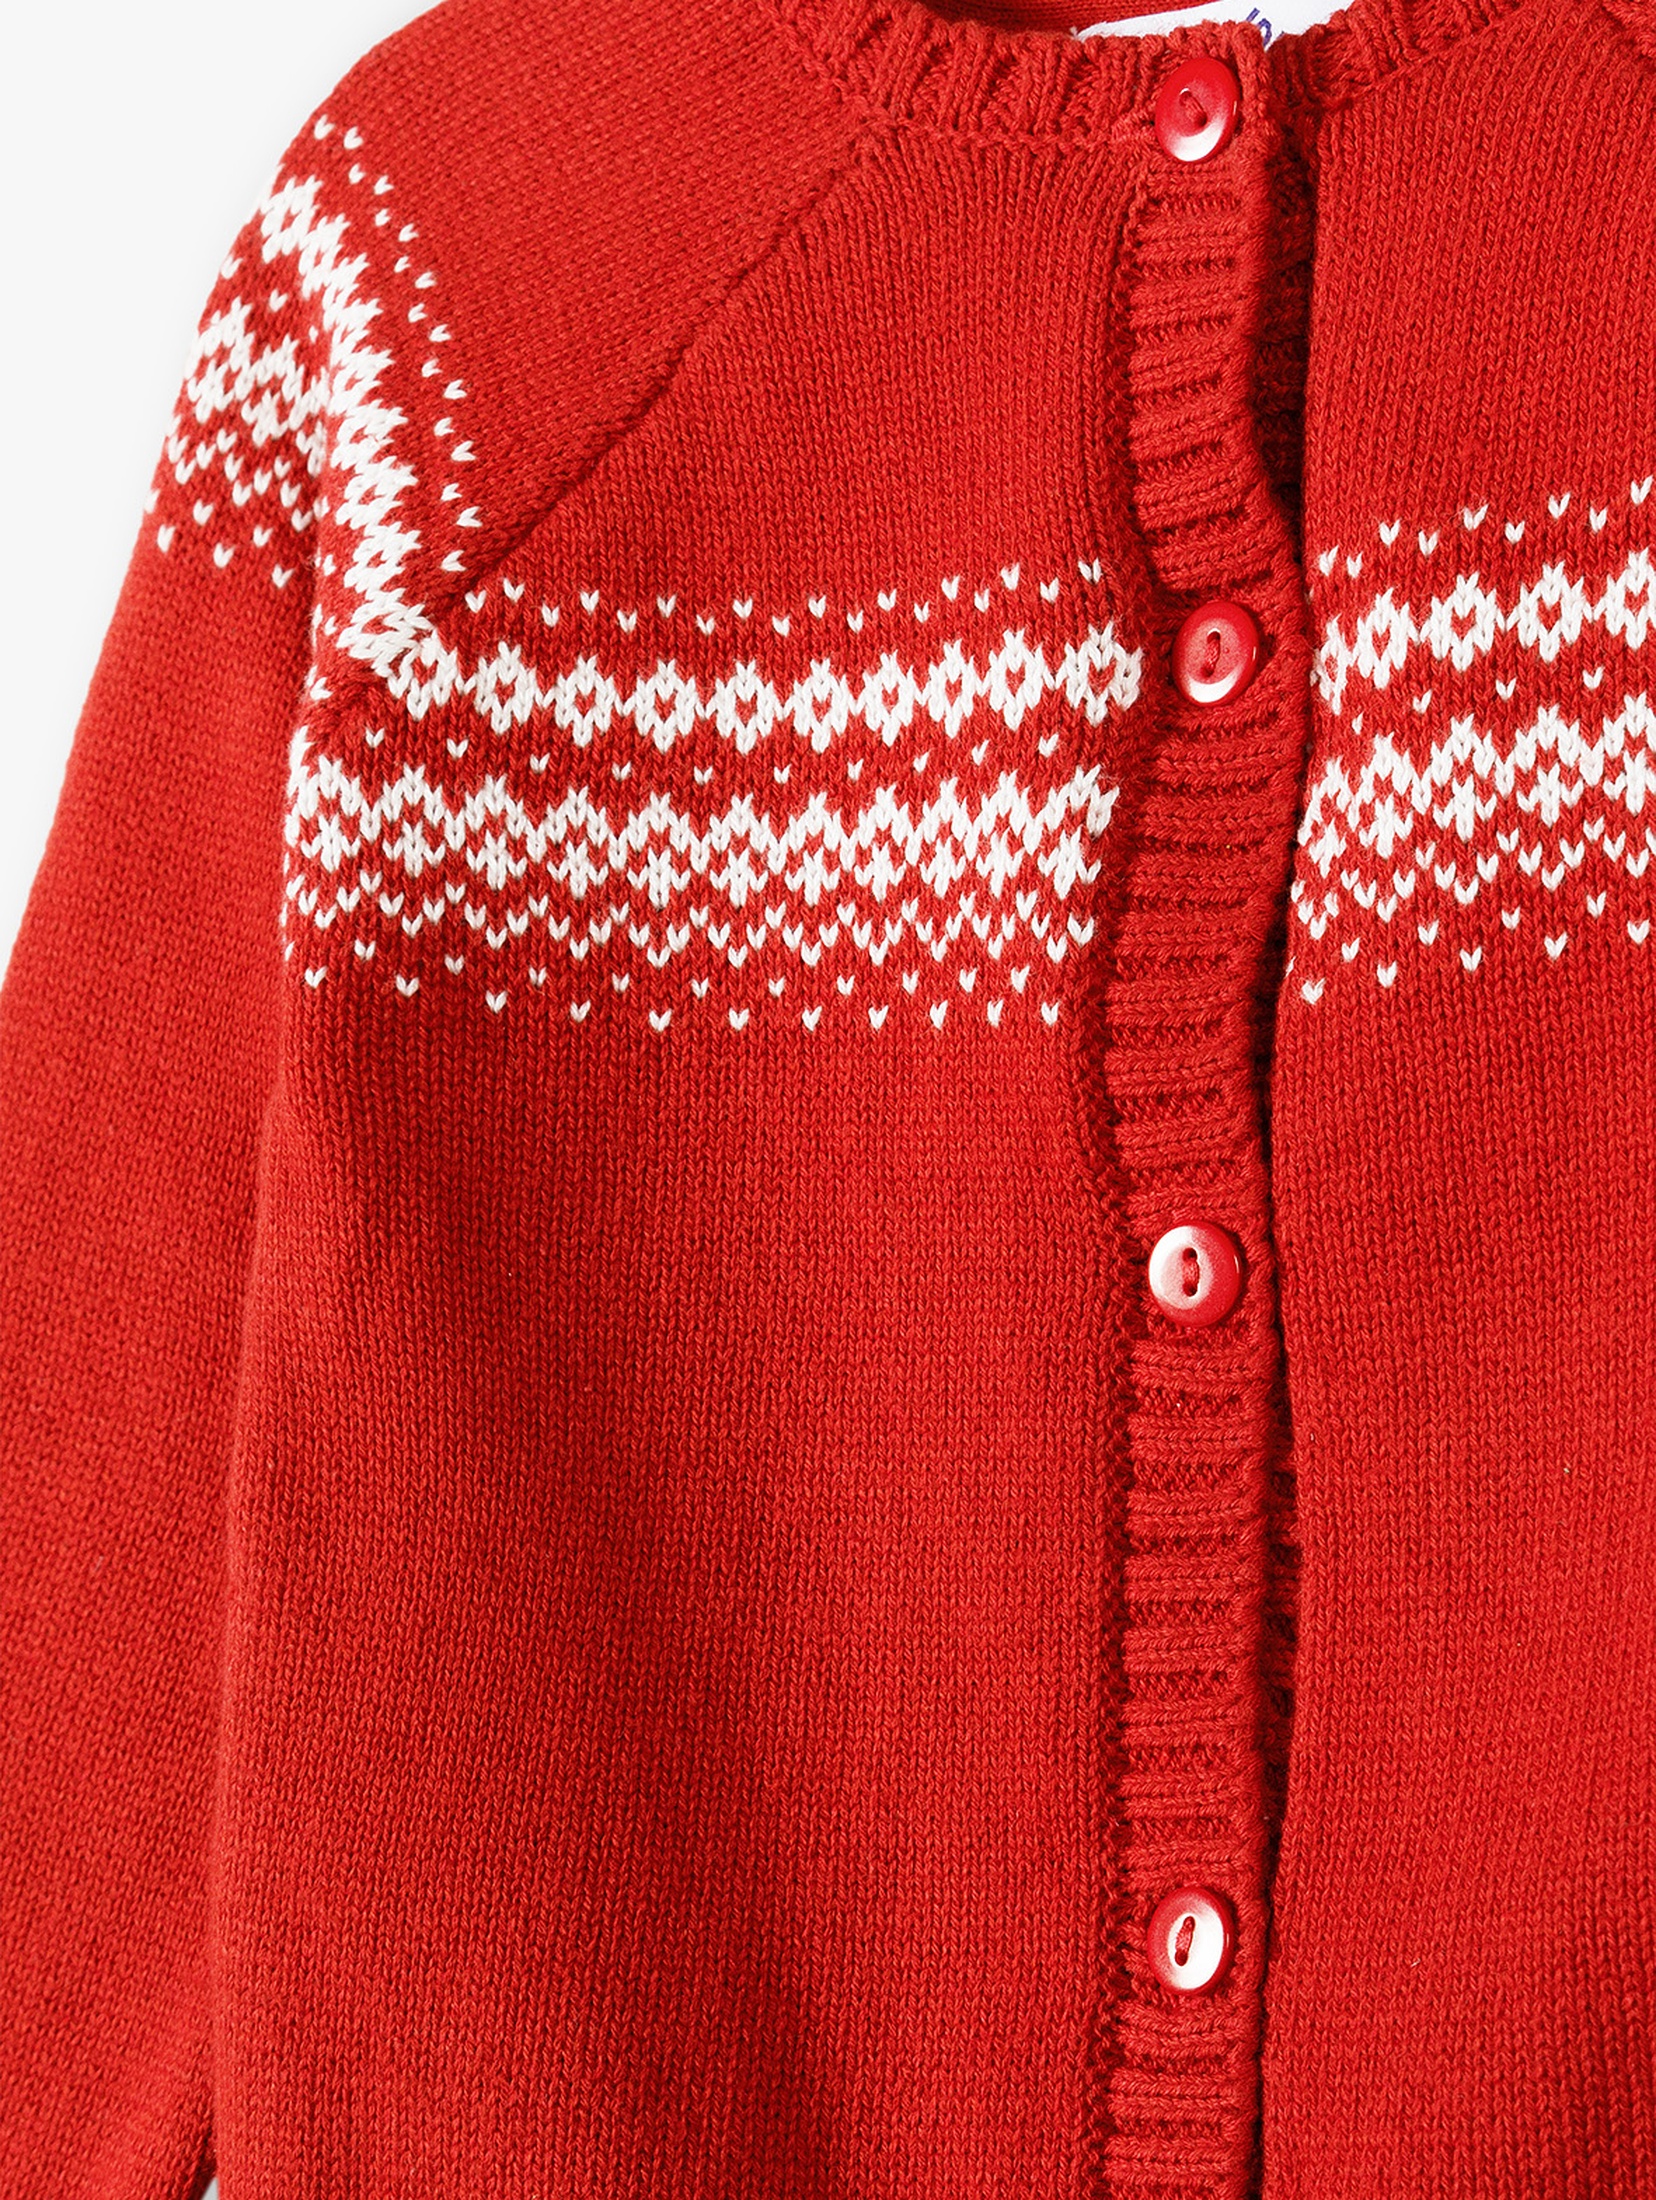 Sweter z motywem świątecznym - czerwony - 5.10.15.